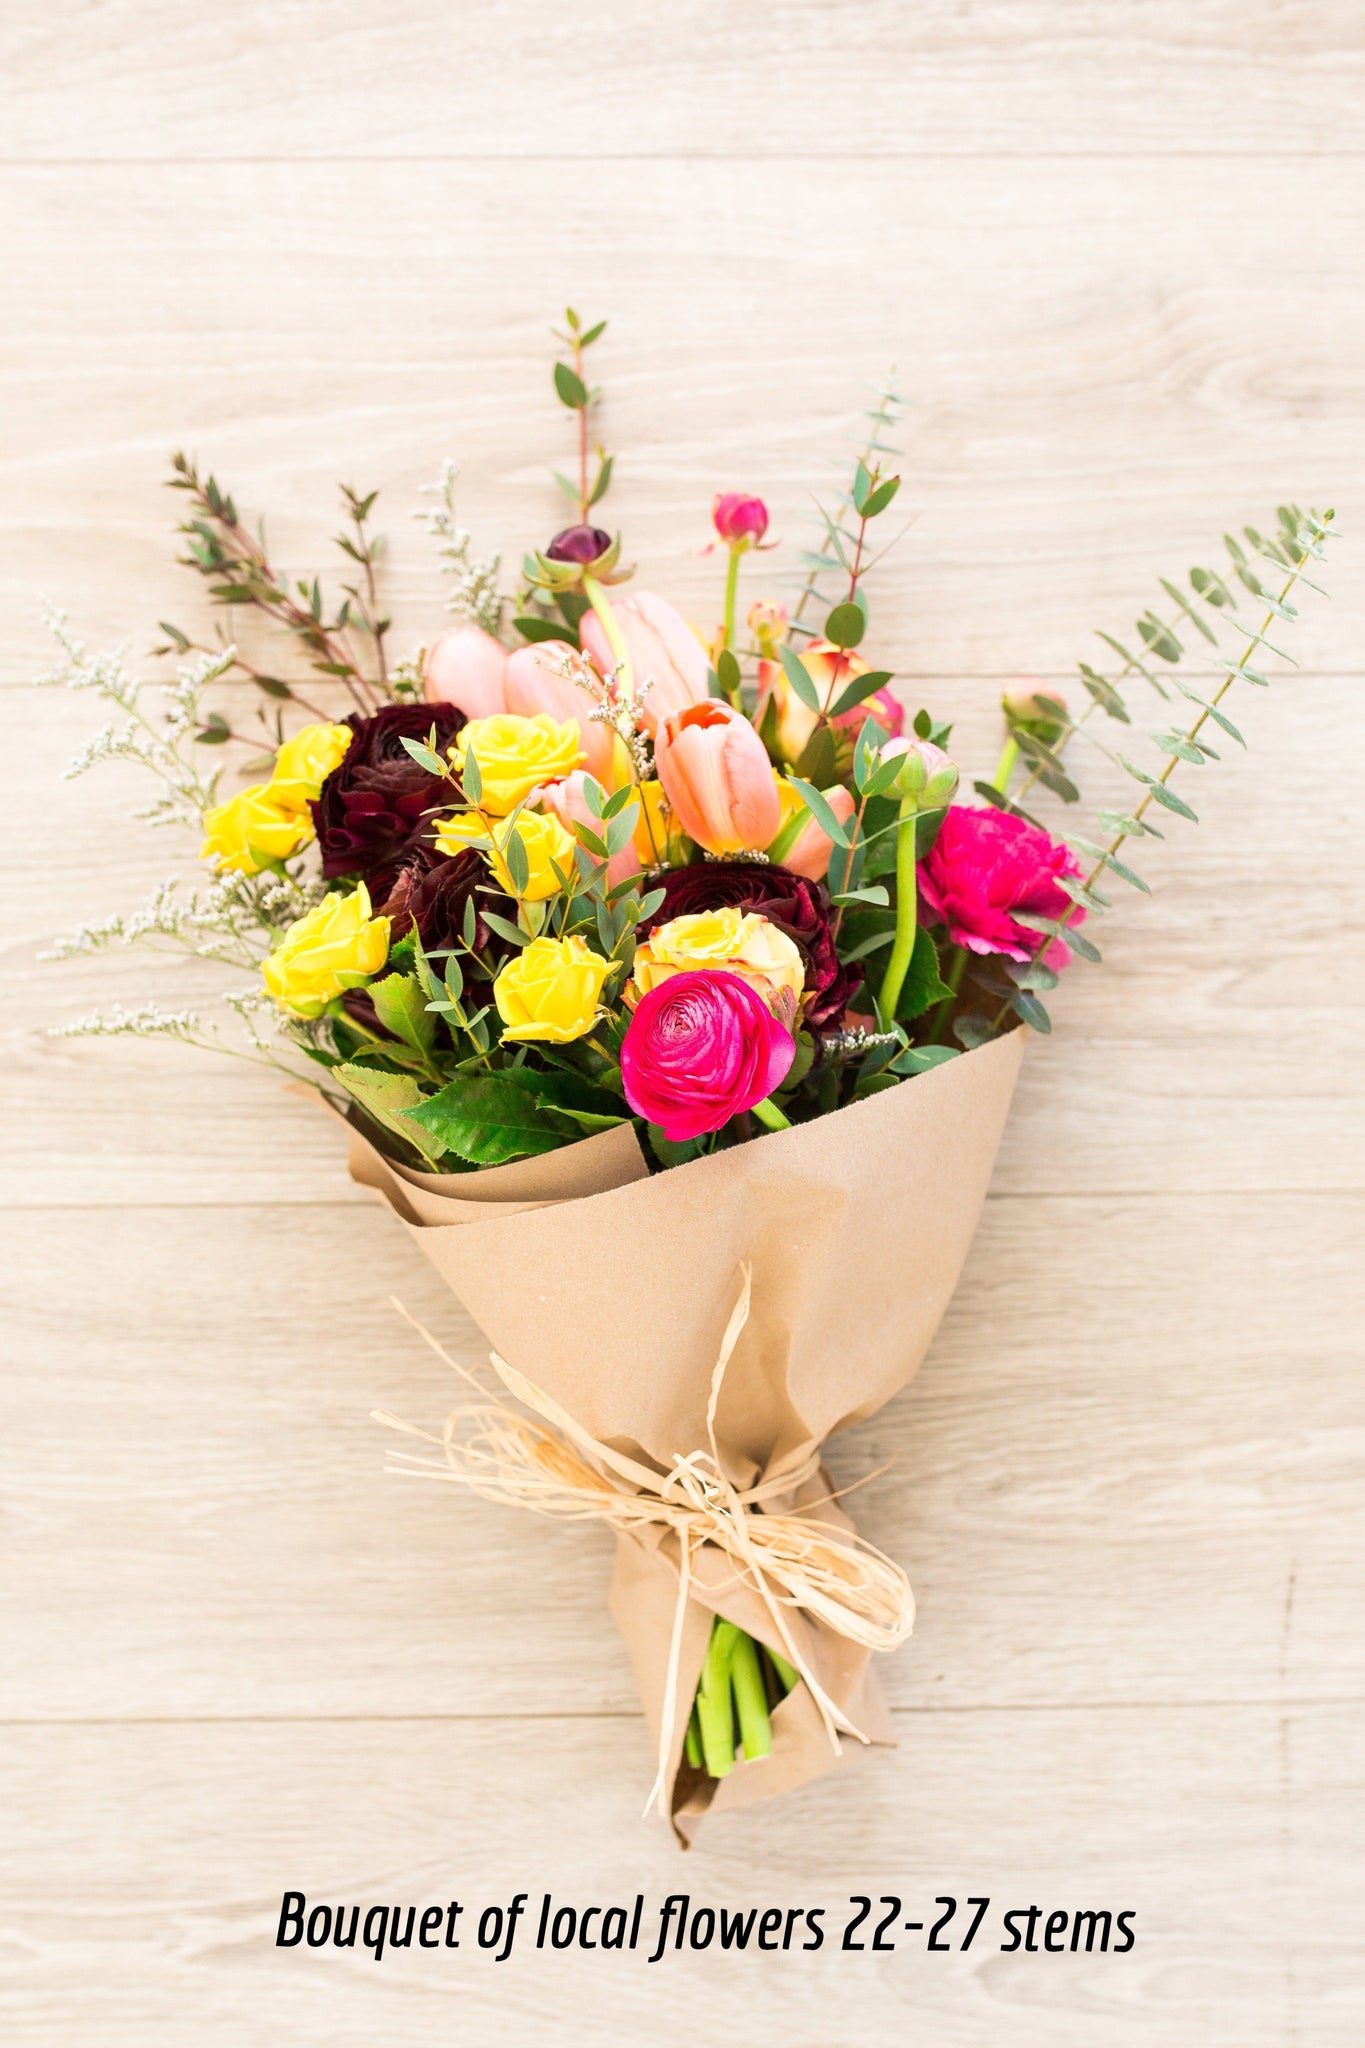 Local Flowers “Florist’s choice”